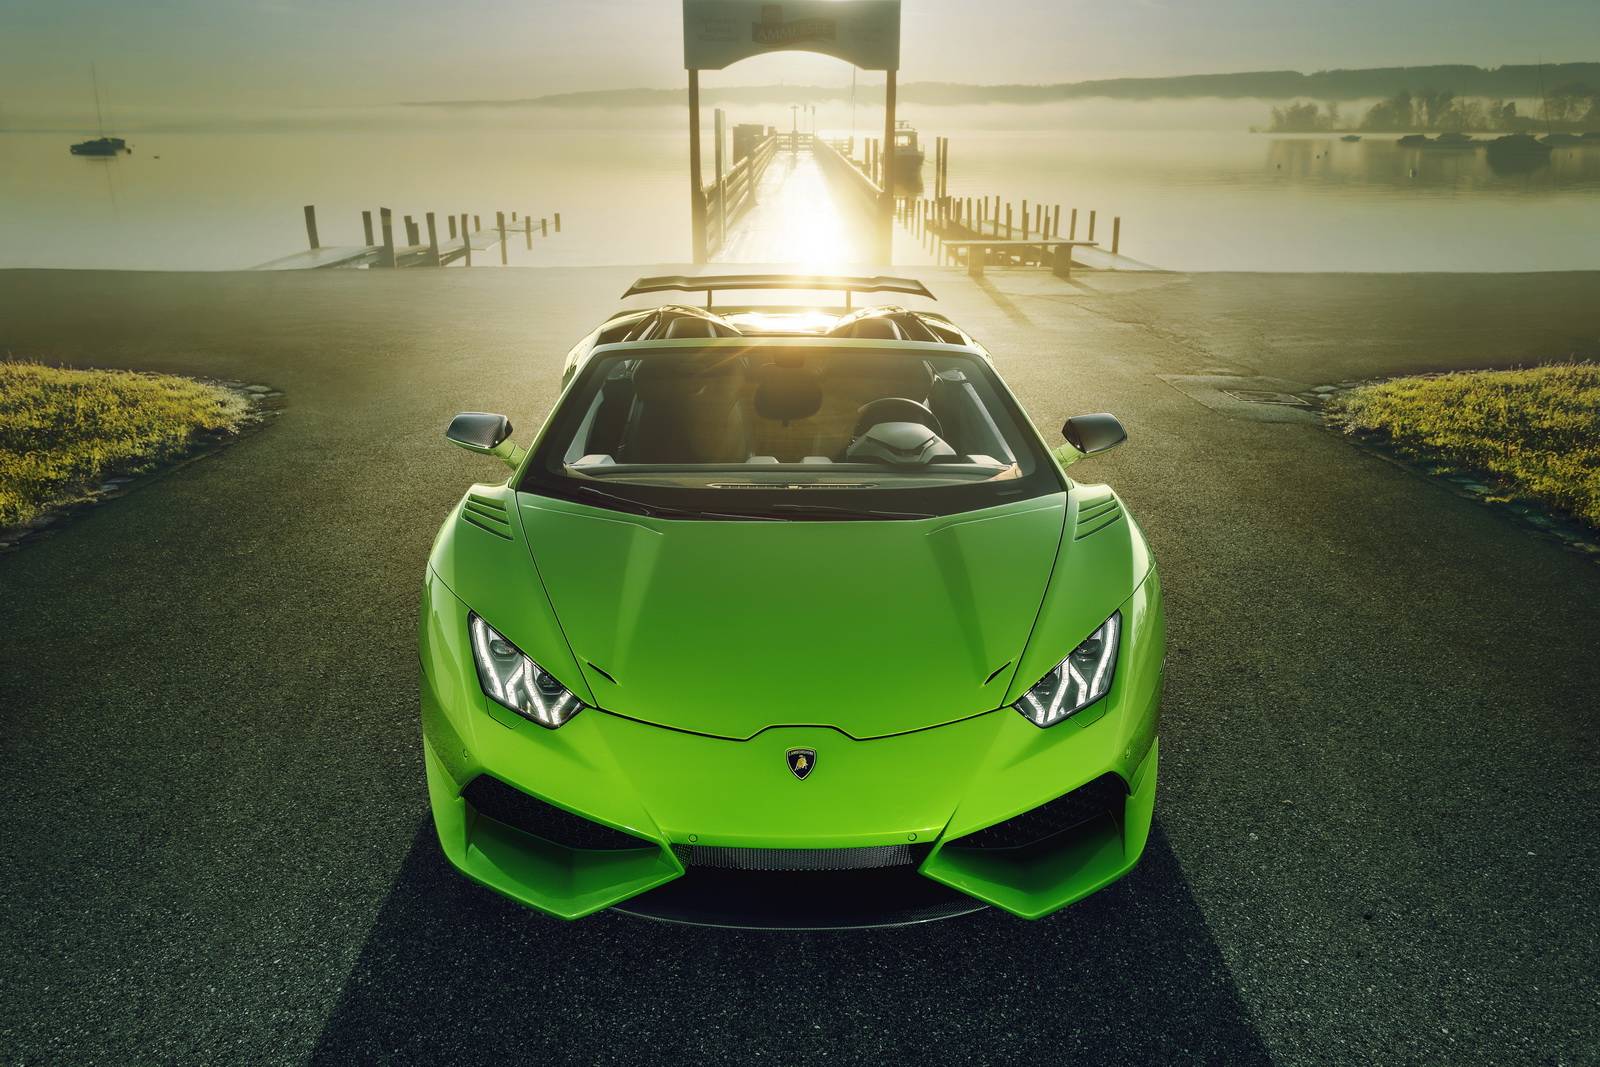 Lamborghini Huracan Spyder: Lamborghini Huracan Spyder - chiếc siêu xe đẳng cấp nhất từ trước đến nay. Quá trình đánh giá khắt khe và kiểm tra chất lượng được đầu tư kỹ càng từ thiết kế cho đến hiệu suất động cơ, đang ở trong tầm tay của bạn. Hãy truy cập vào hình ảnh để khám phá mọi góc độ xức lịch sử của siêu xe này.